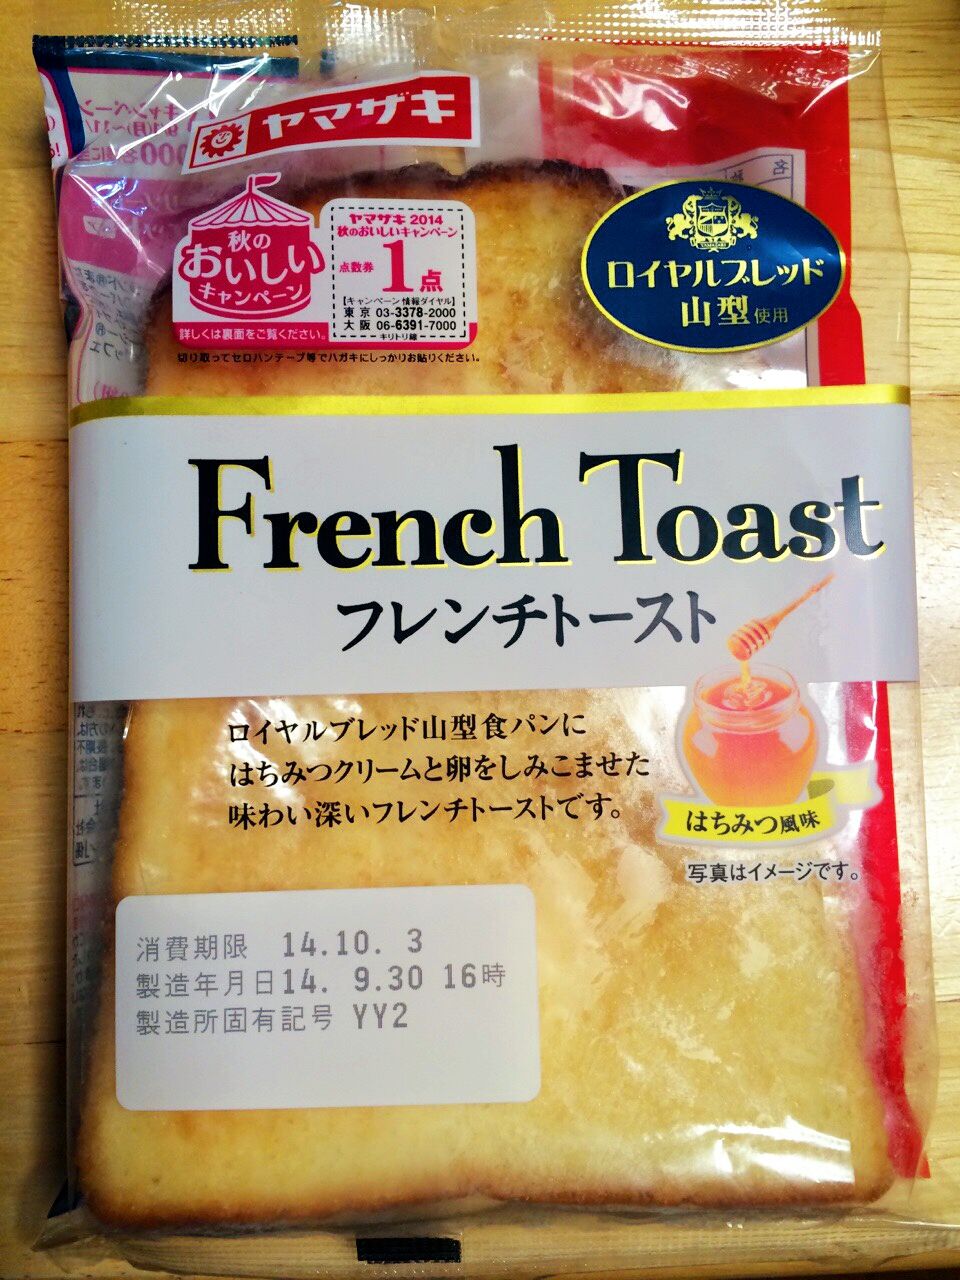 ヤマザキ フレンチトースト のぼーん日和